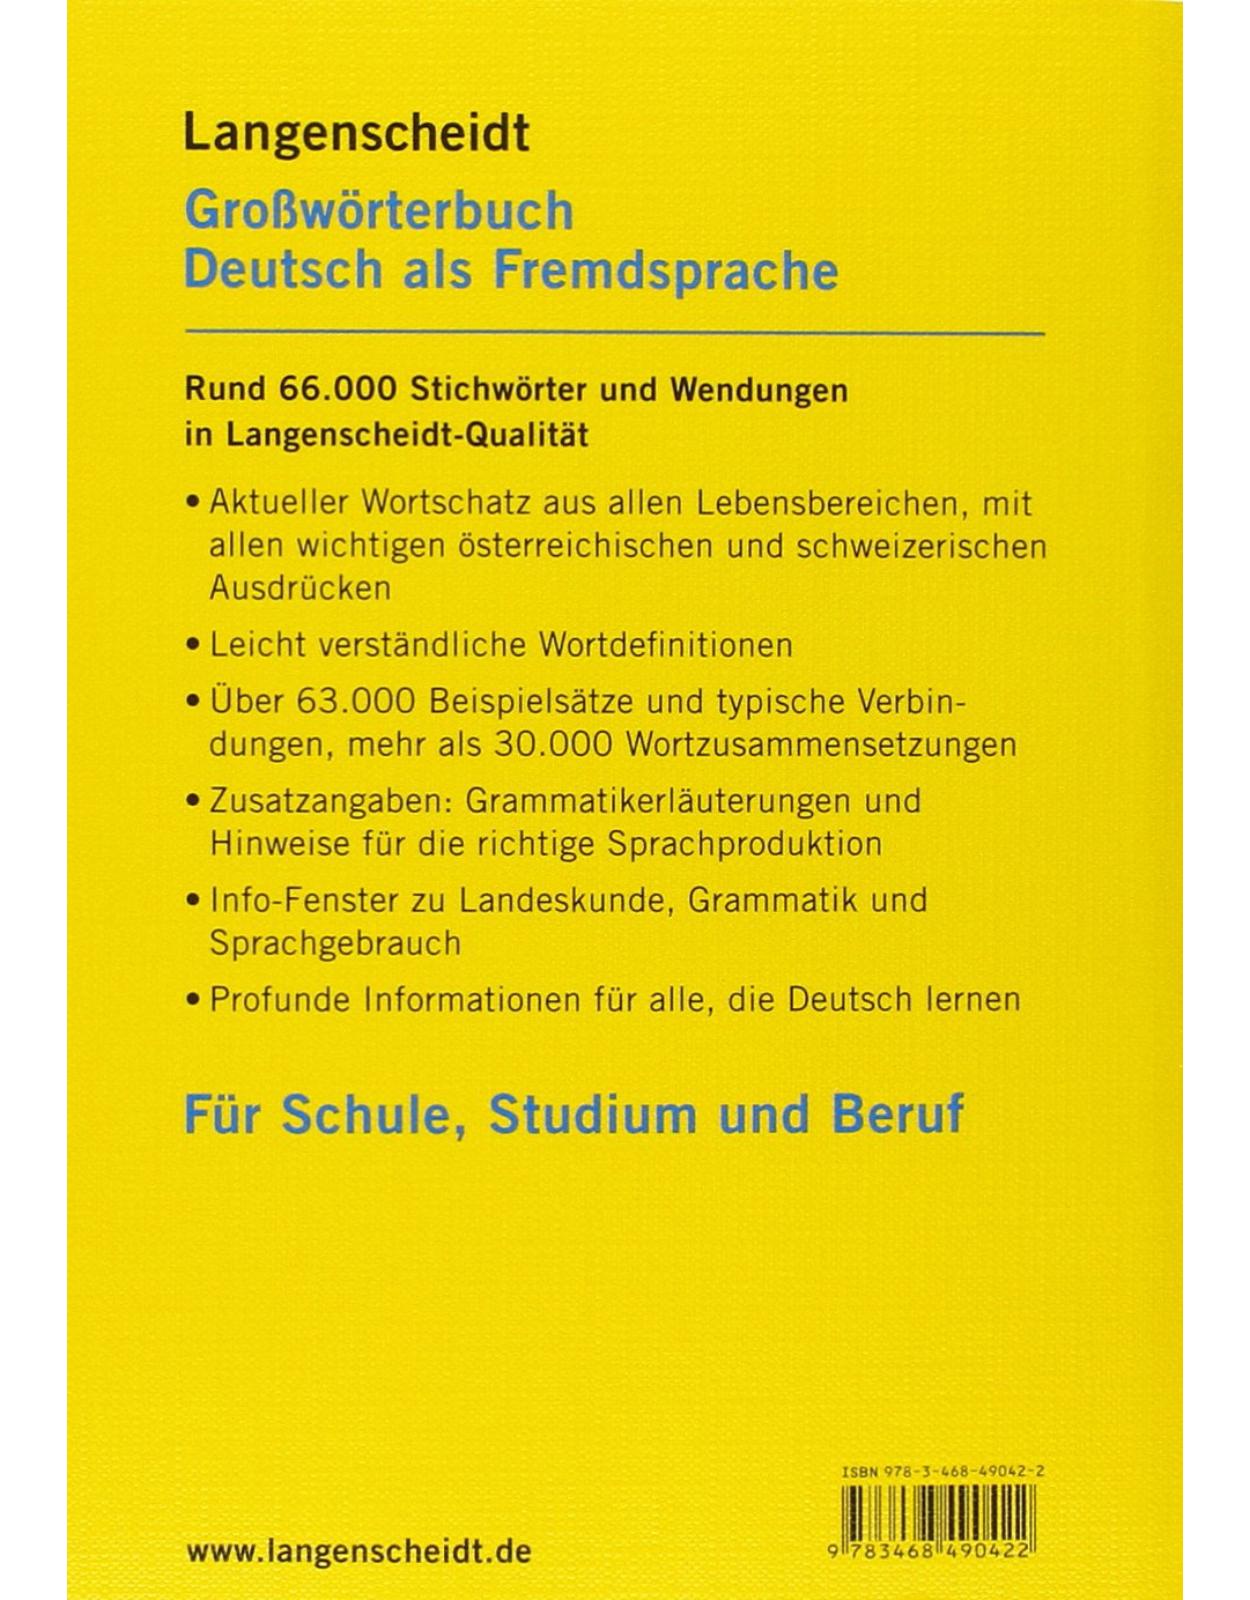 Langenscheidt Großworterbuch Deutsch als Fremdsprache